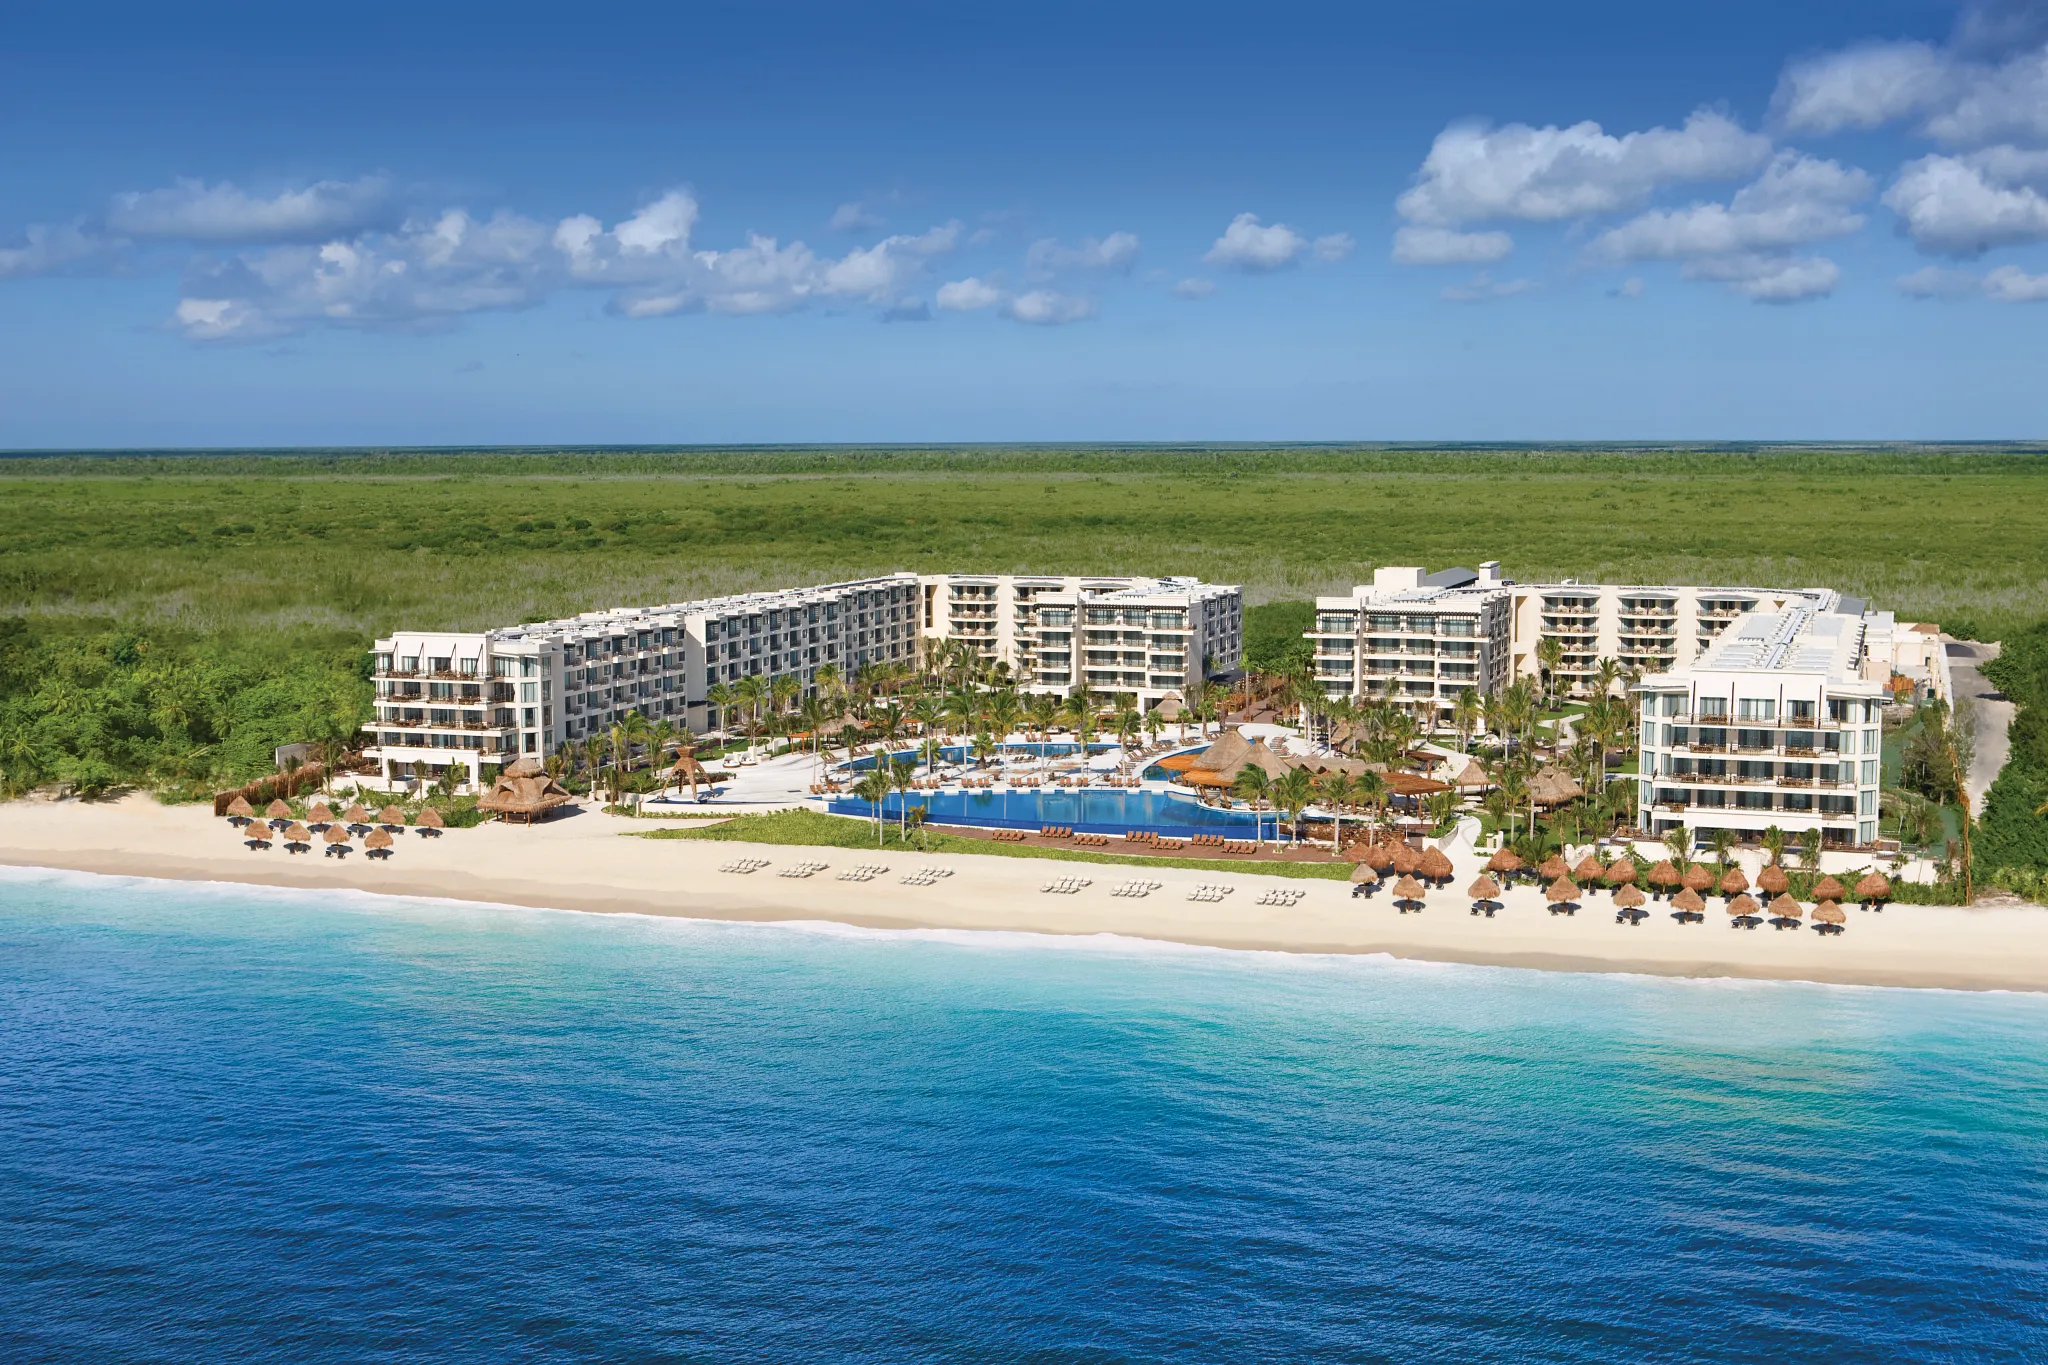 Dreams Riviera Cancun - Air Credit Vacations